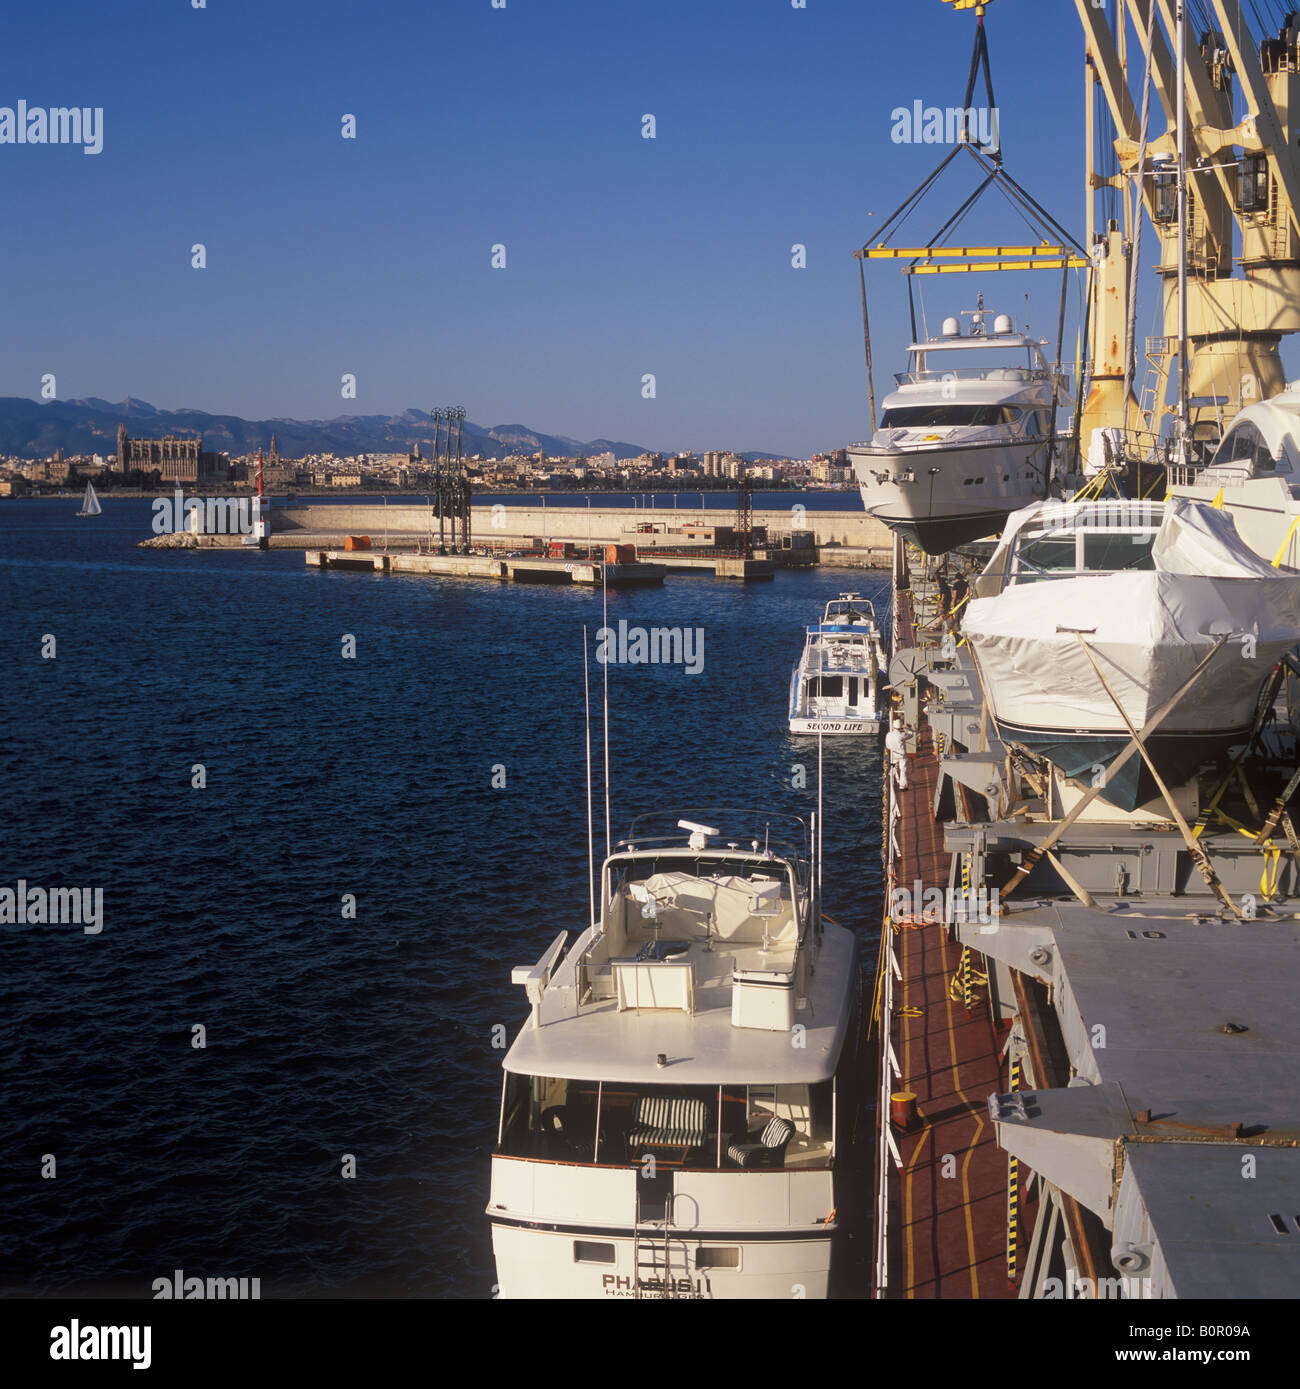 Lo scarico di yacht da yacht transporter Cielo di Vancouver nel porto di Palma de Mallorca Foto Stock